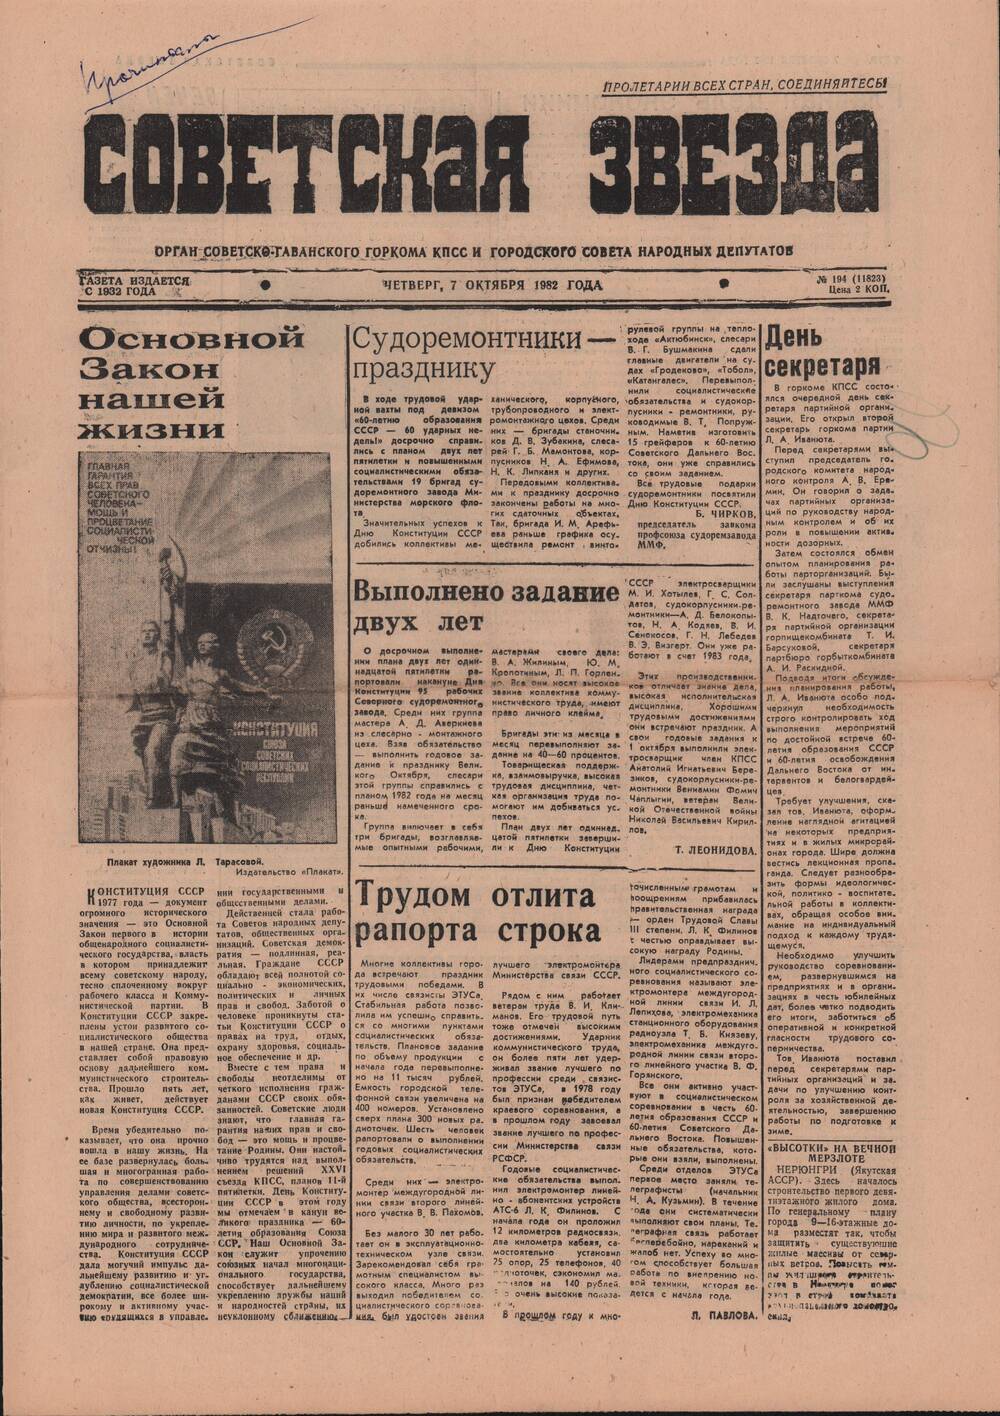 Газета «Советская звезда» № 194 от 7 октября 1982 г. о ветеранах труда бытового обслуживания.